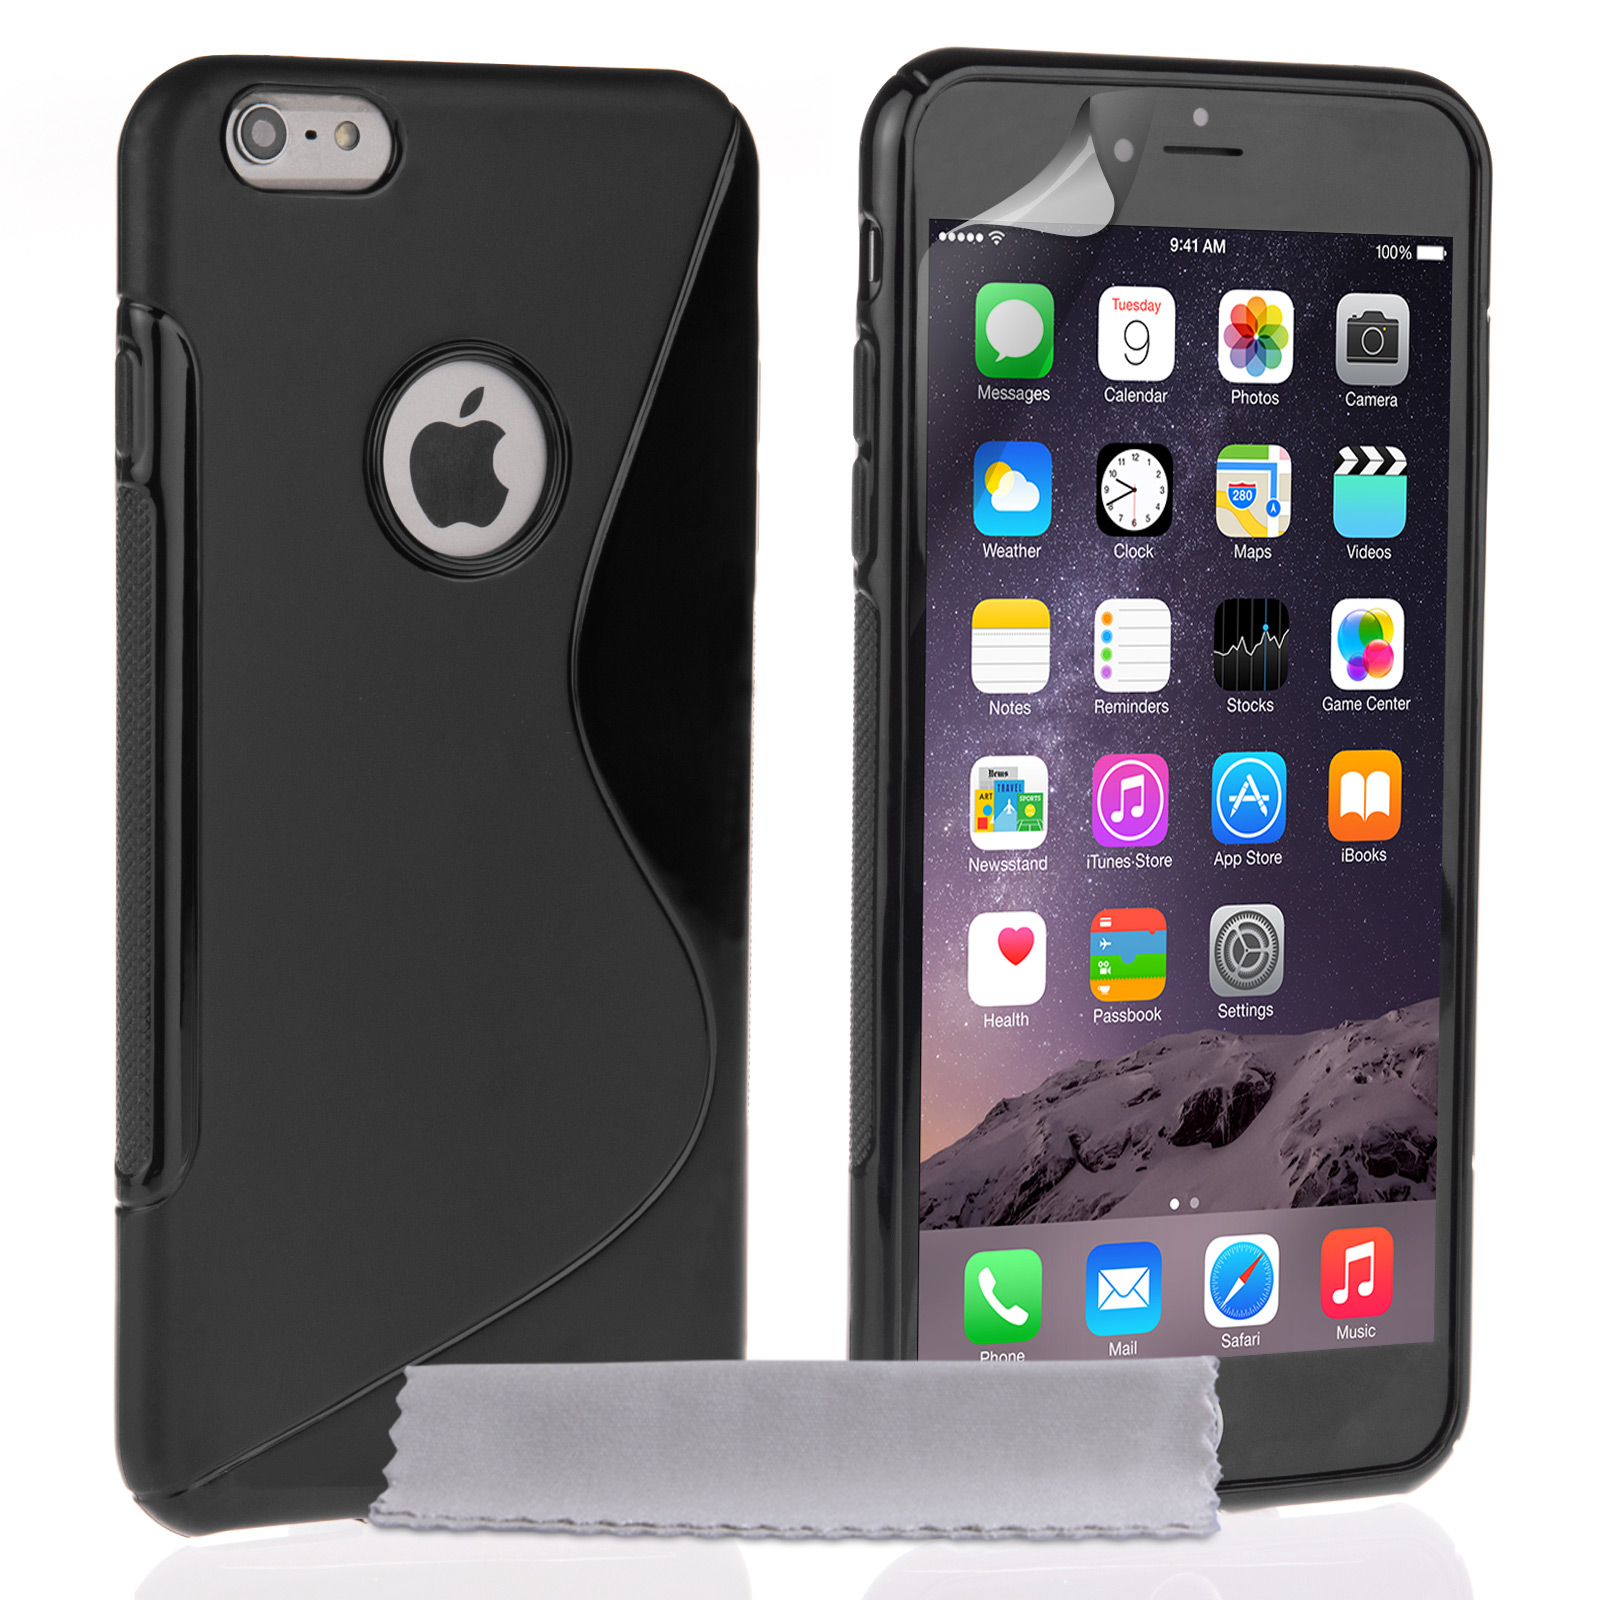 Caseflex iPhone 6 Plus and 6s Plus Silicone Gel S-Line Case - Black